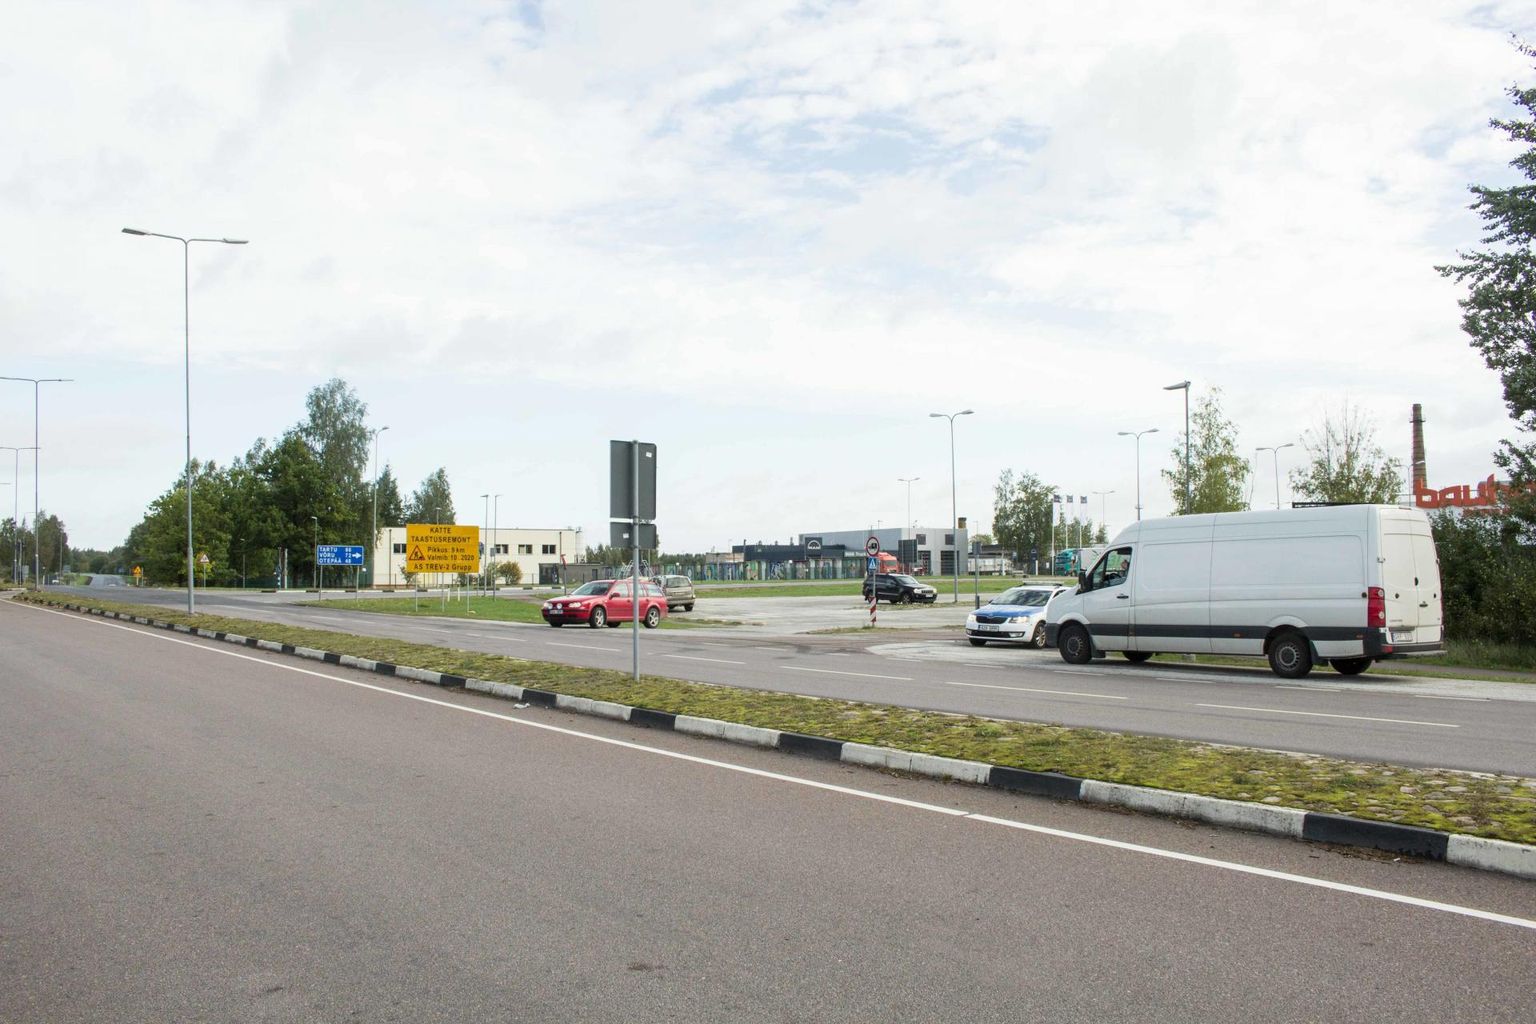 Politsei kontrollib piirialal Lätist saabujaid pisteliselt, piirikontrolli esialgu plaanis pole. Fotol piiripunkt Valga Alko1000 kaupluse juures.